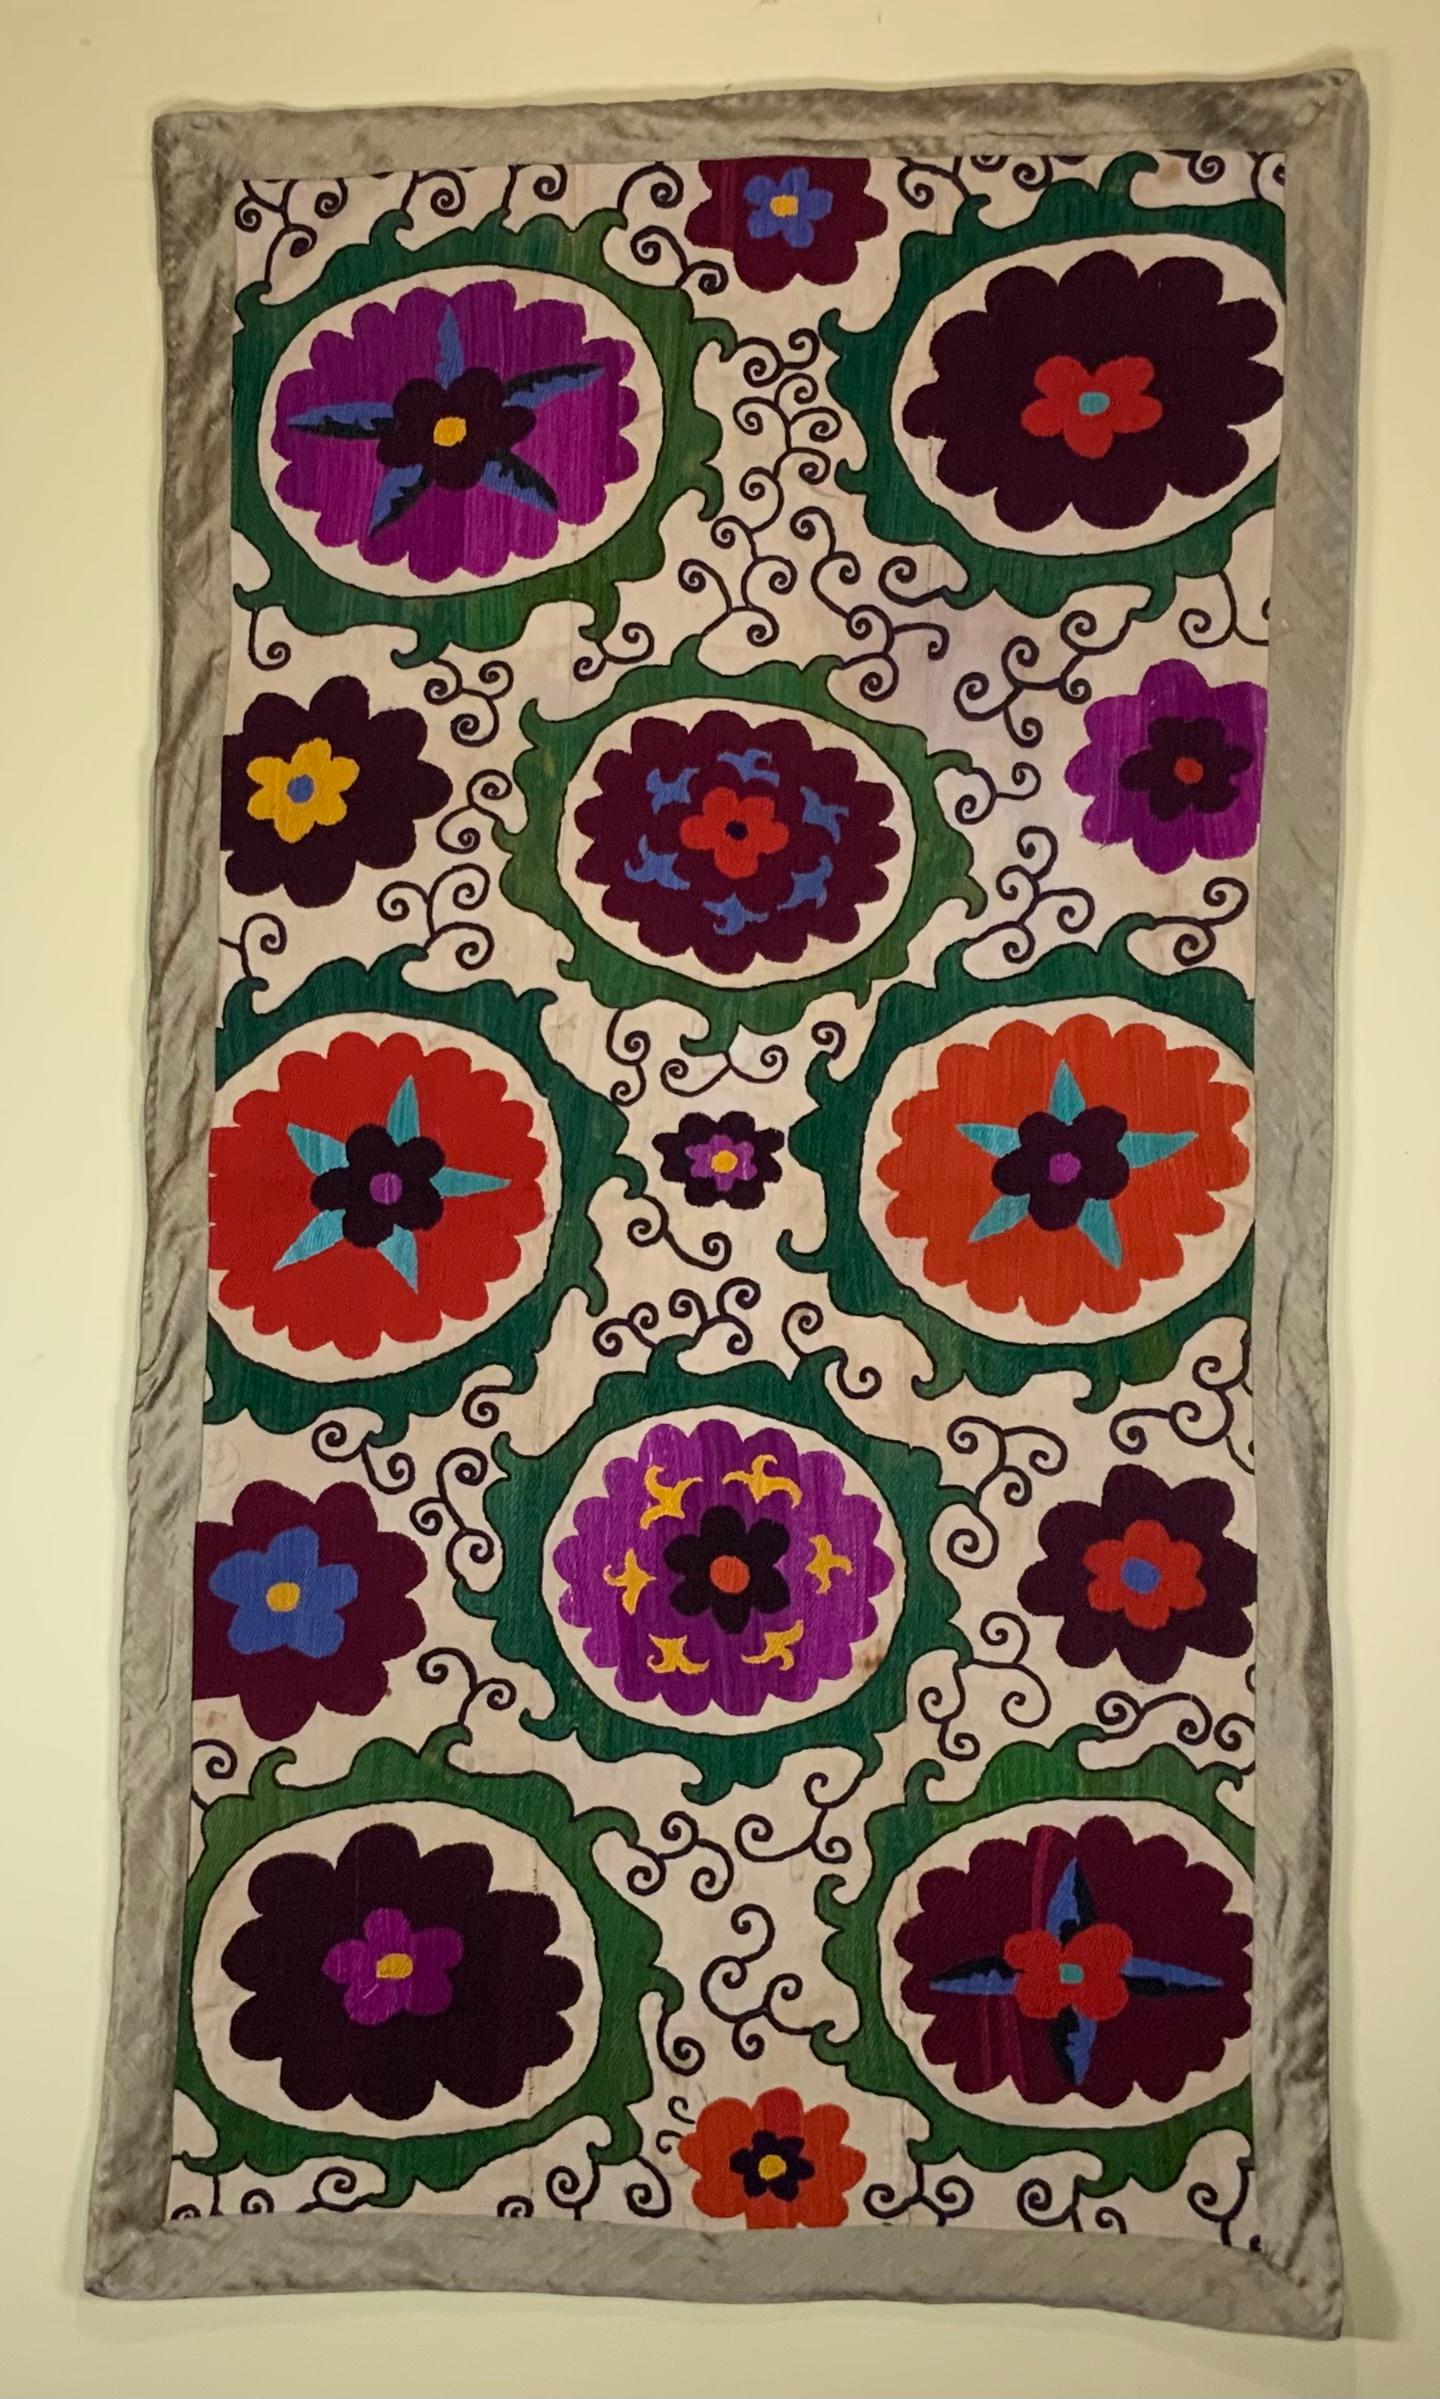 Antikes Suzani-Textil aus handgesticktem, kompliziertem Scrolling von acht großen Blumenmotiven auf einem handgewebten Baumwollgrund. Professionell gereinigt und mit feinem Textil hinterlegt.
Kann als Wandbehang oder auf einem Tisch oder einer